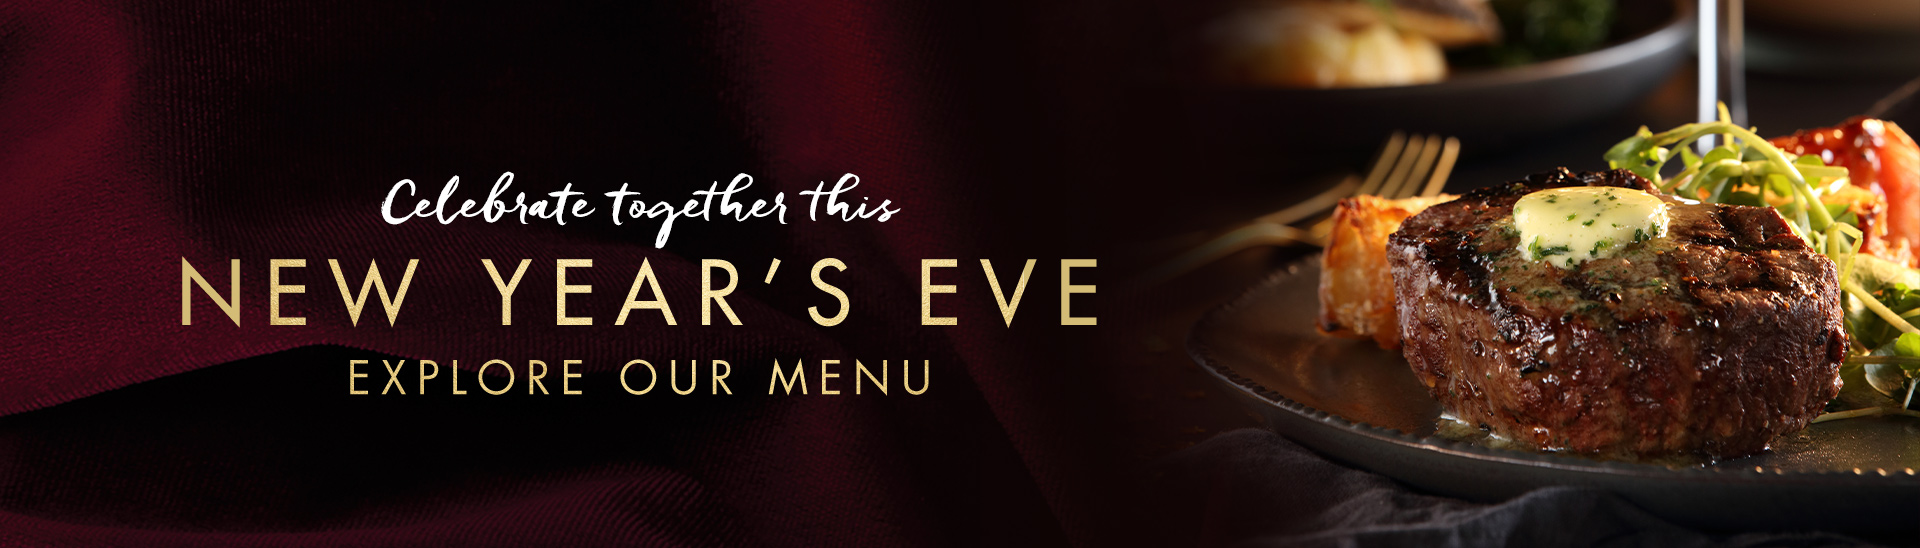 New Year’s eve menu at Miller & Carter Basingstoke 